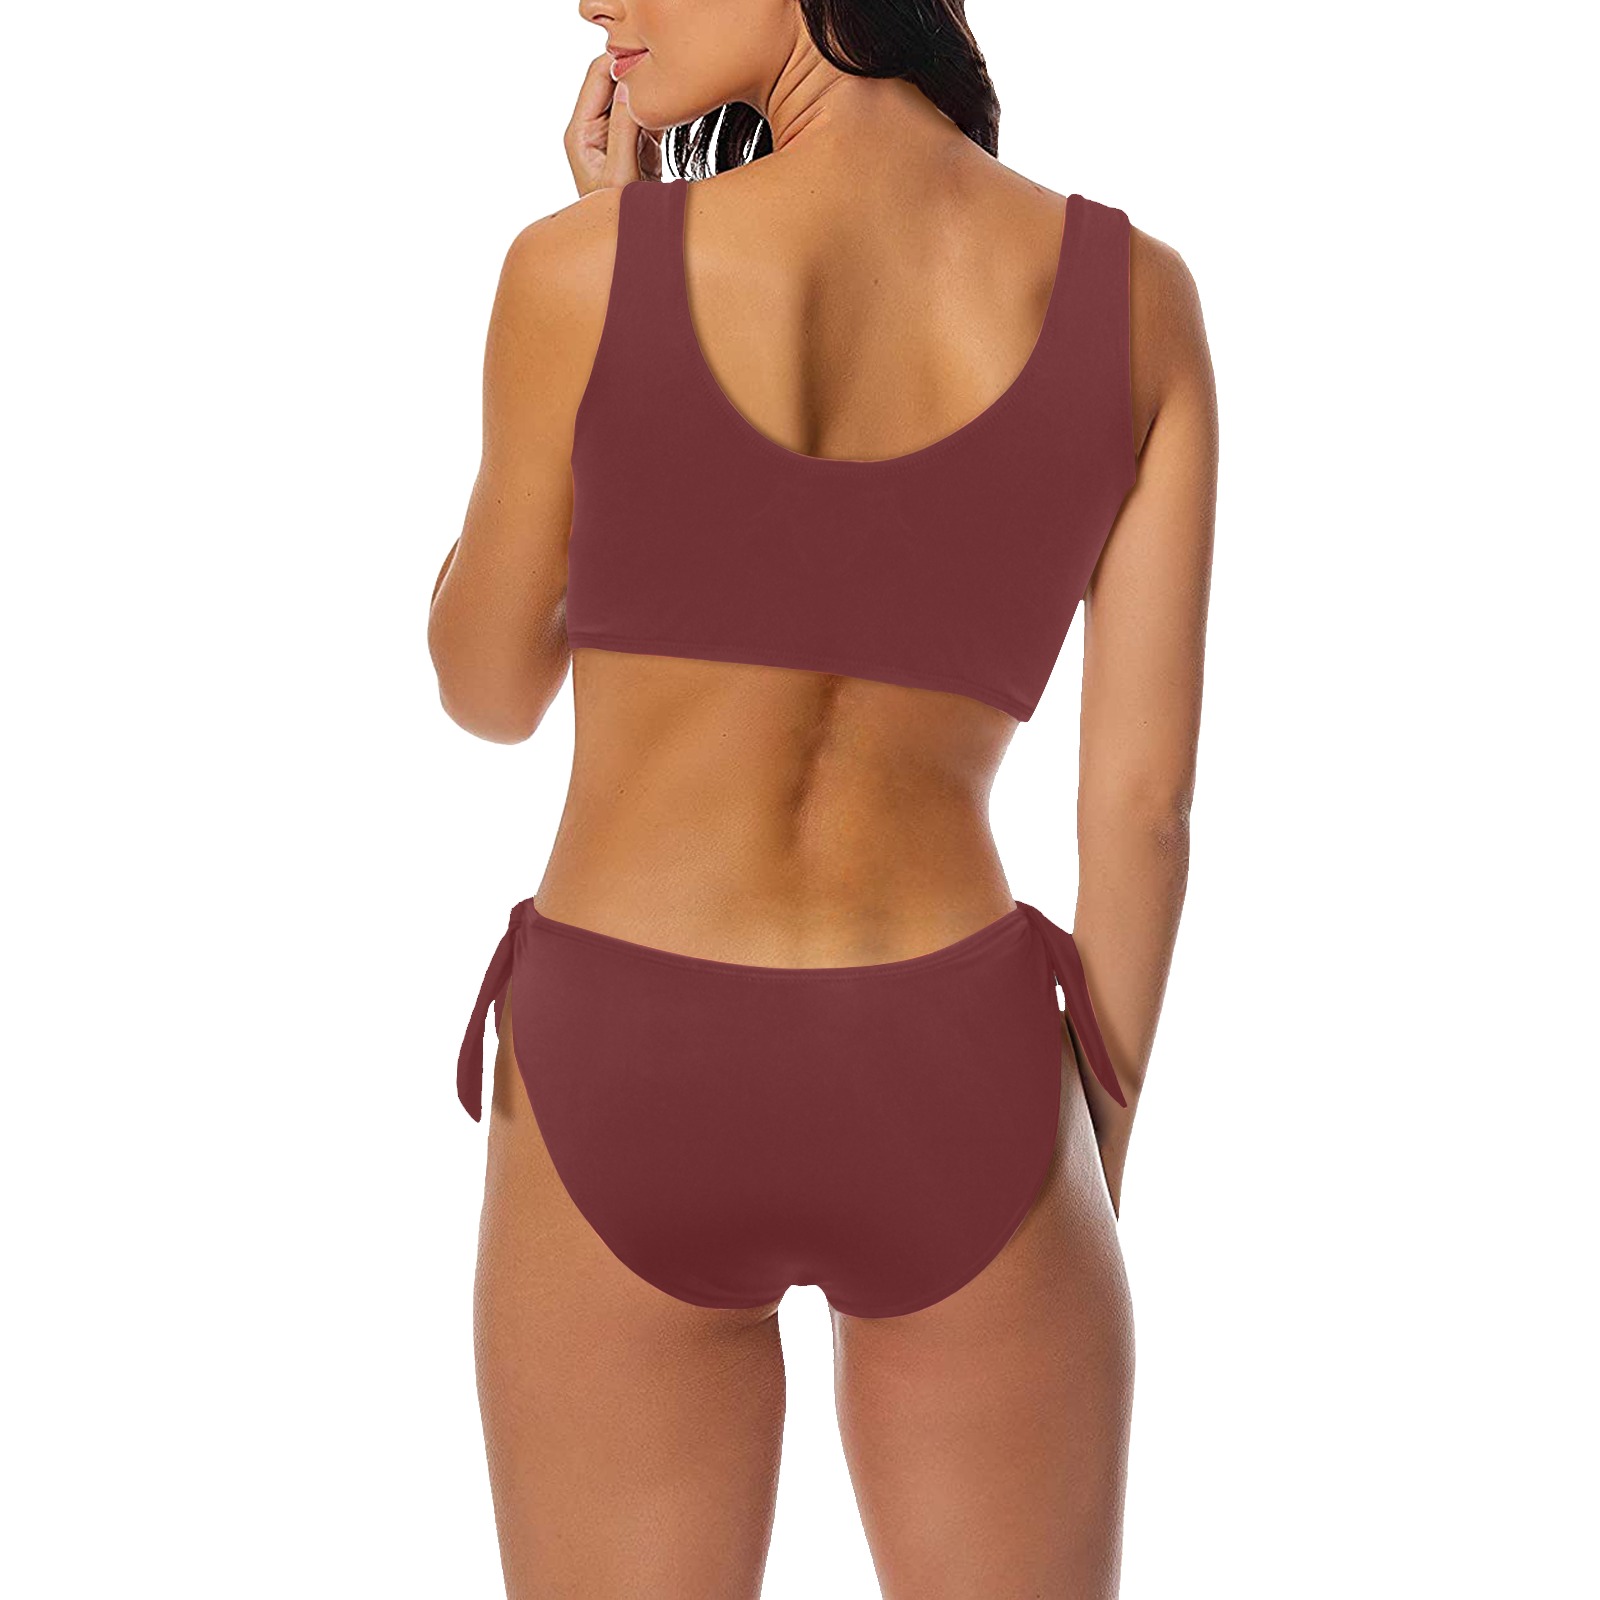 Daisy Woman's Swimwear Maroon Plain Bow Tie Front Bikini Swimsuit (Model S38)